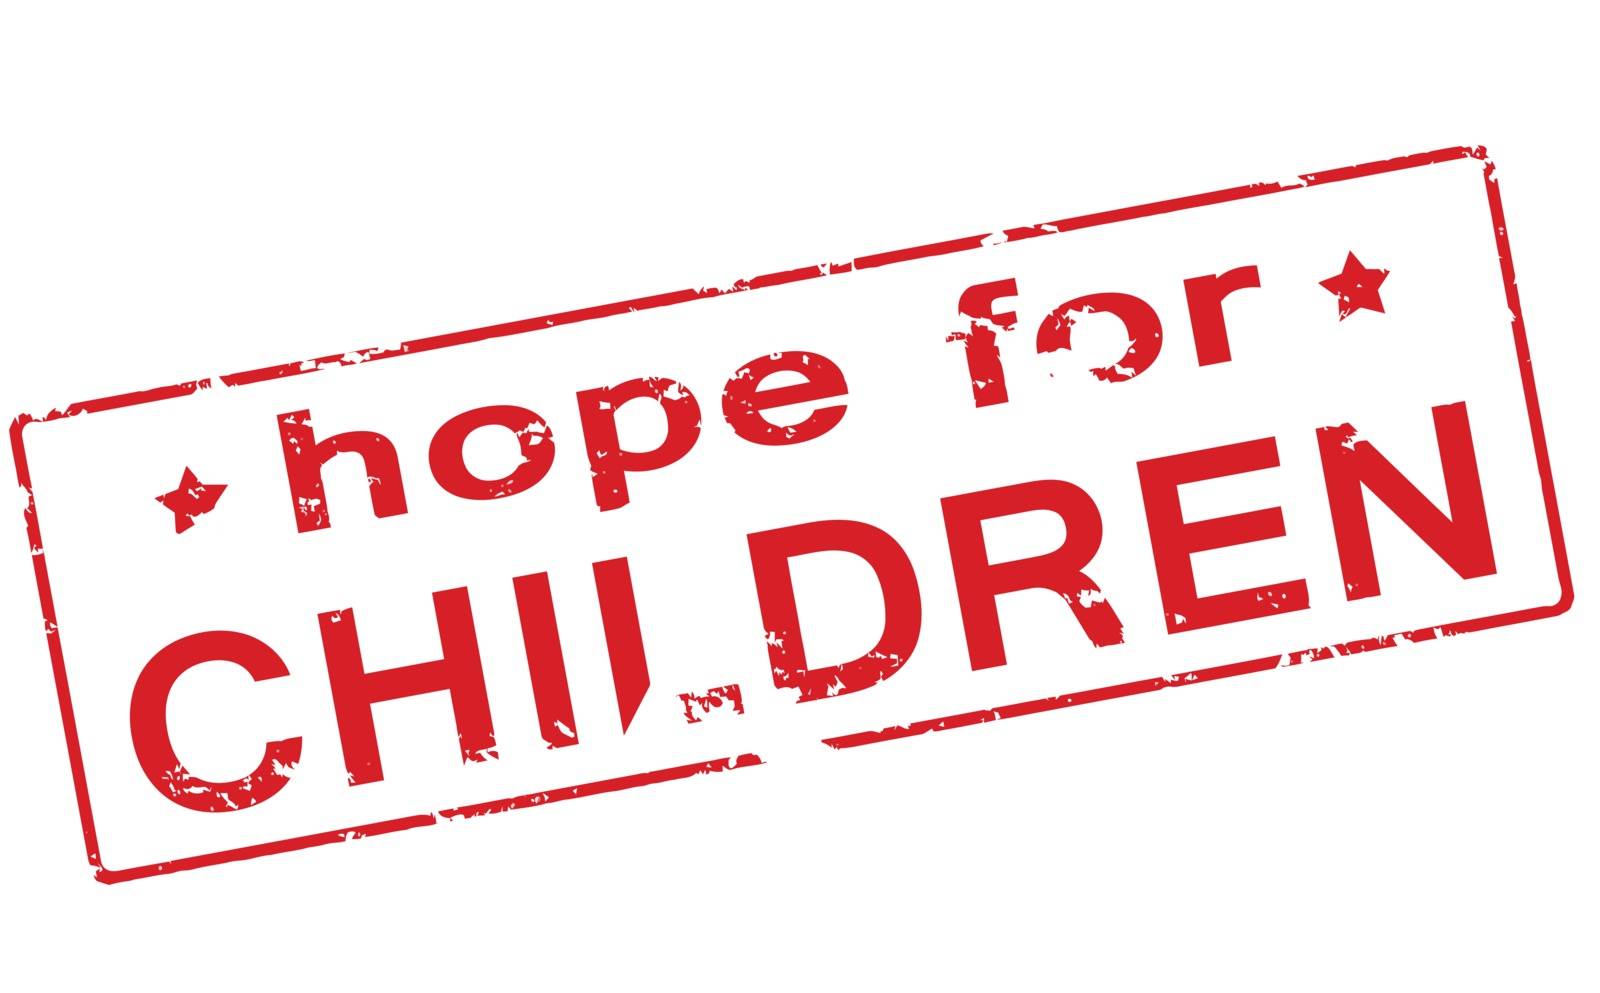 Hope for children by carmenbobo